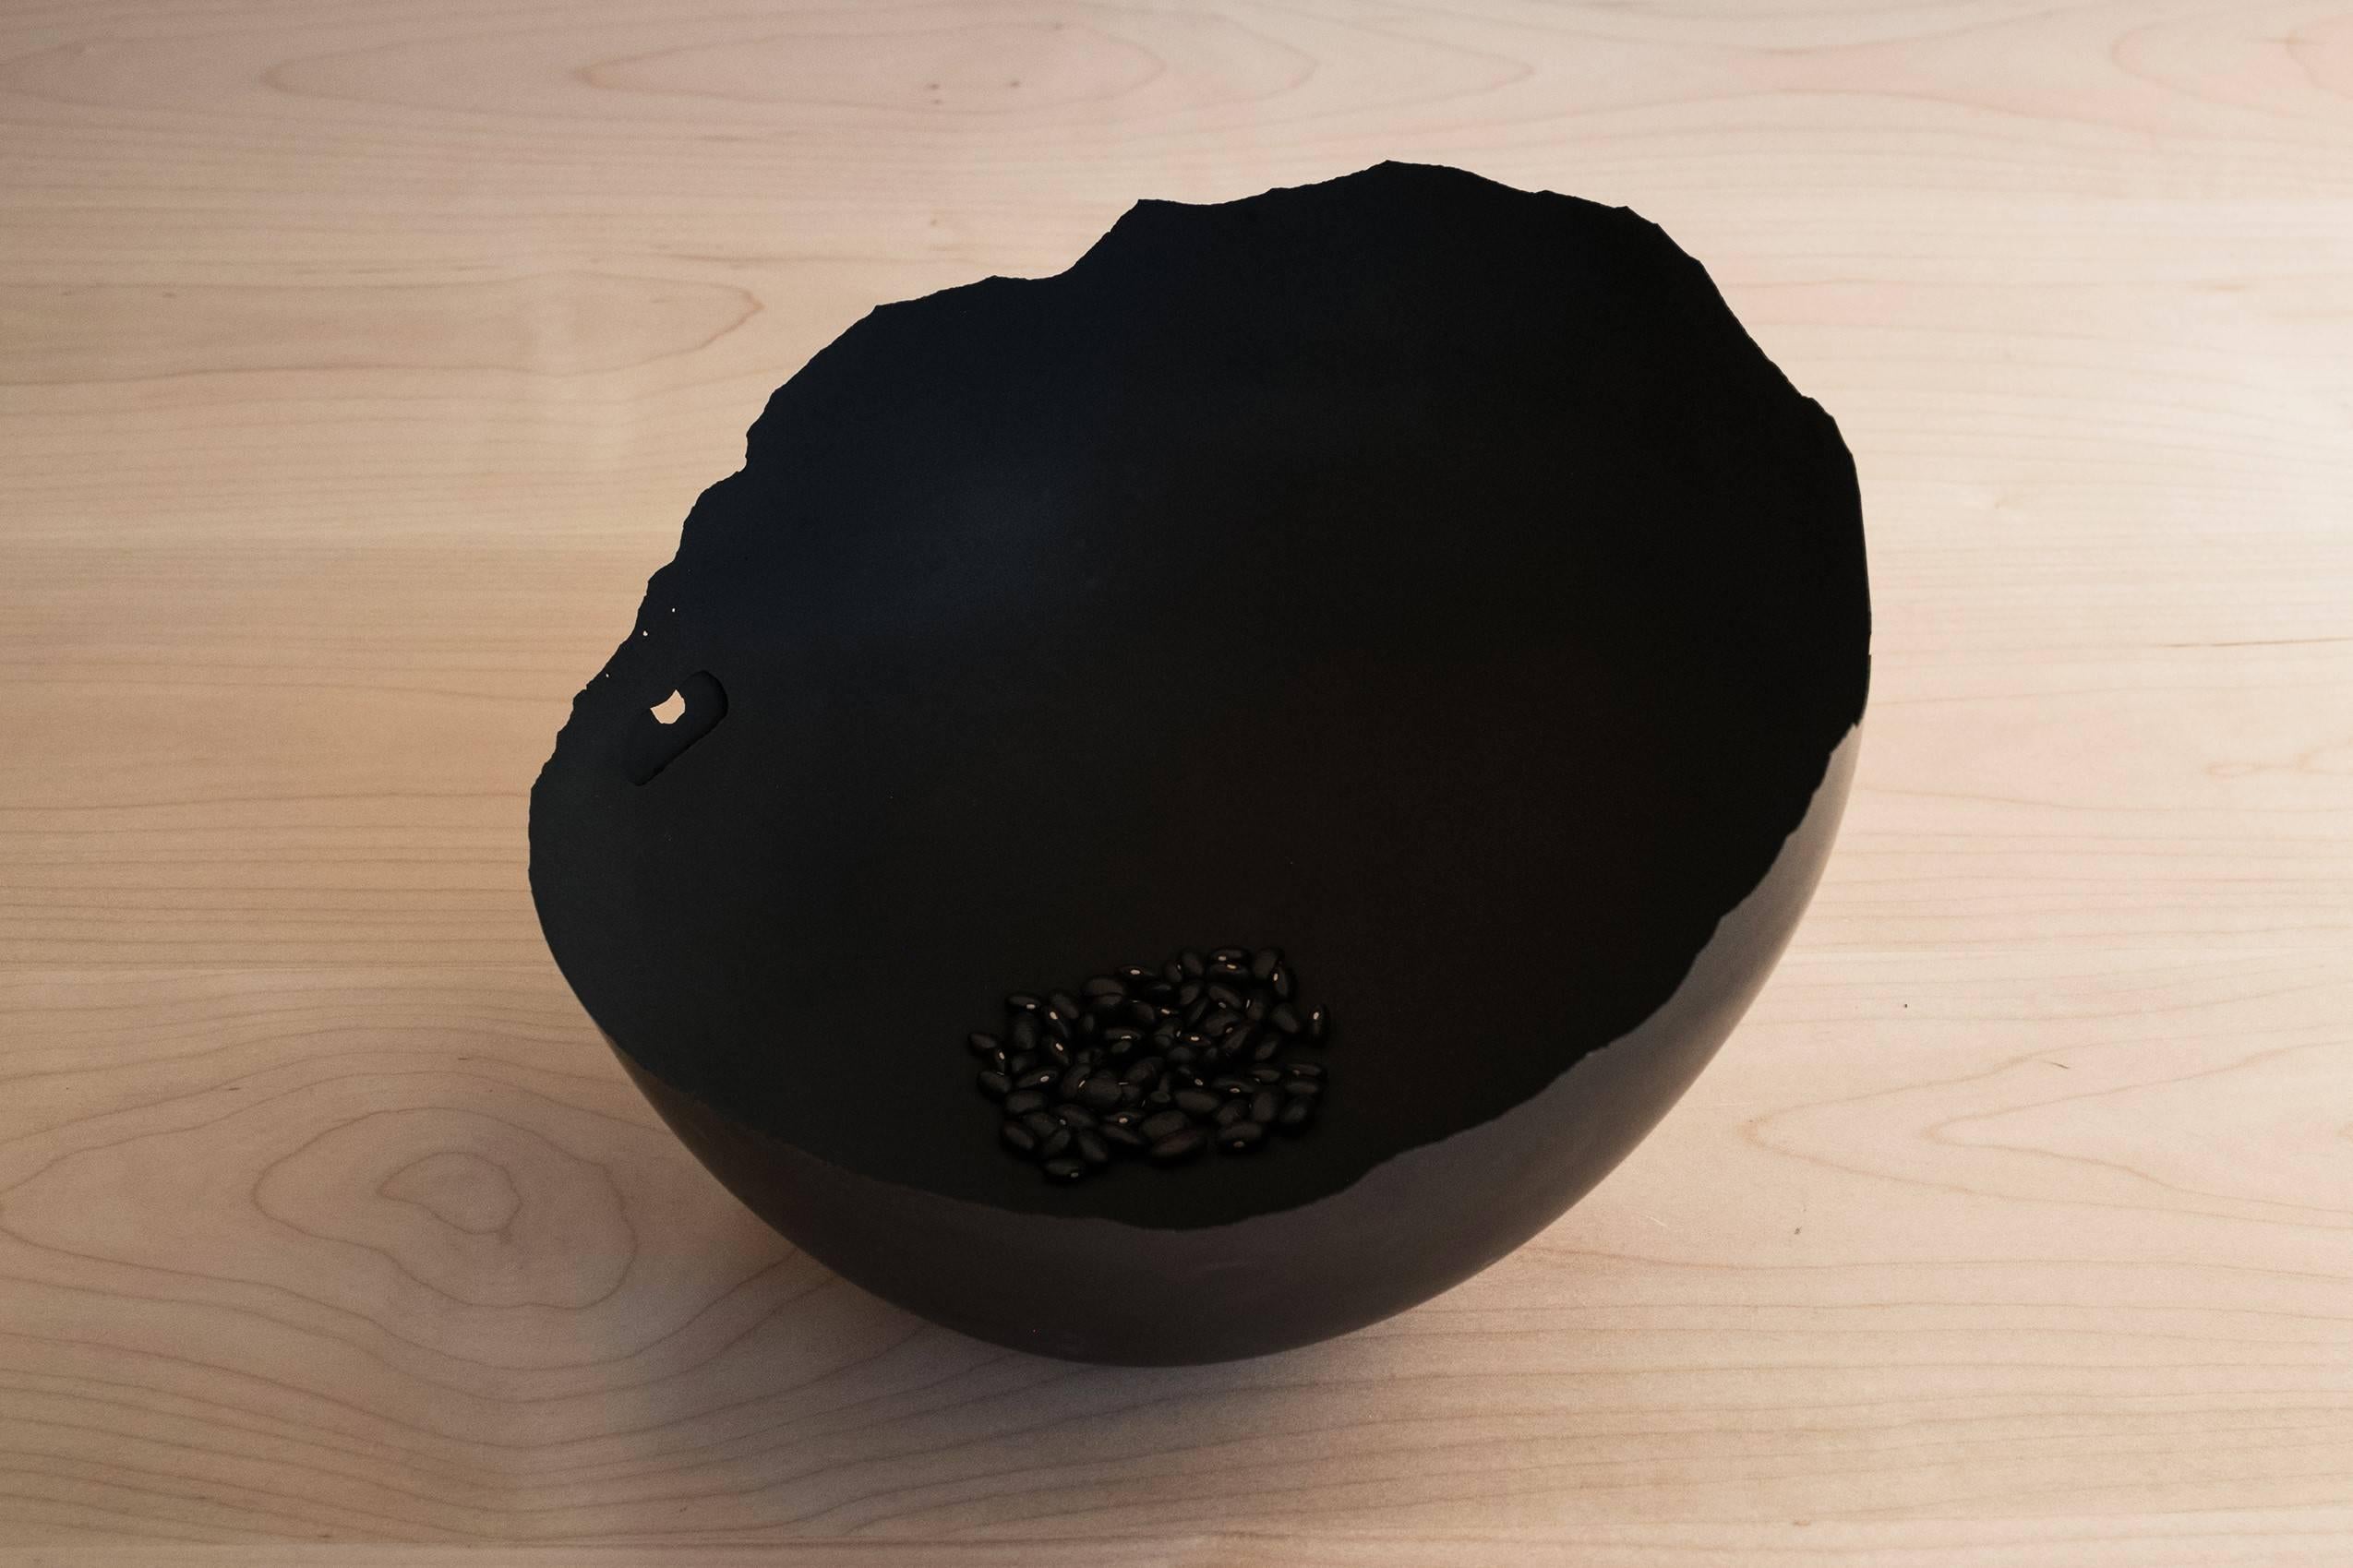 Contemporary Handmade Cast Concrete Bowl in Black by UMÉ Studio